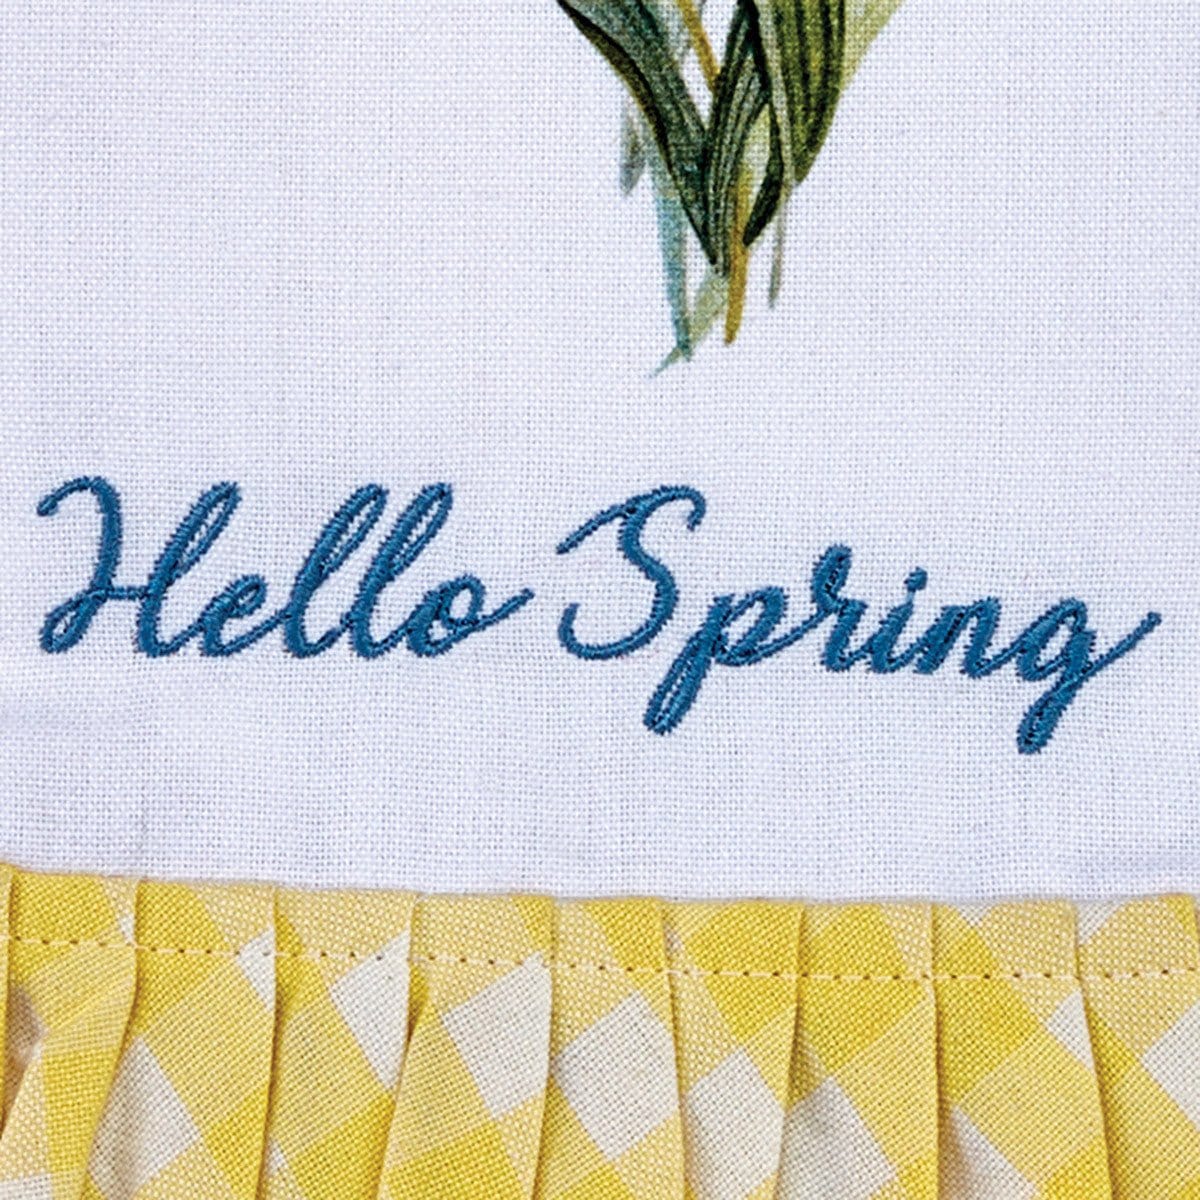 Forever Spring Decorative Towel Dishtowel-Park Designs-The Village Merchant